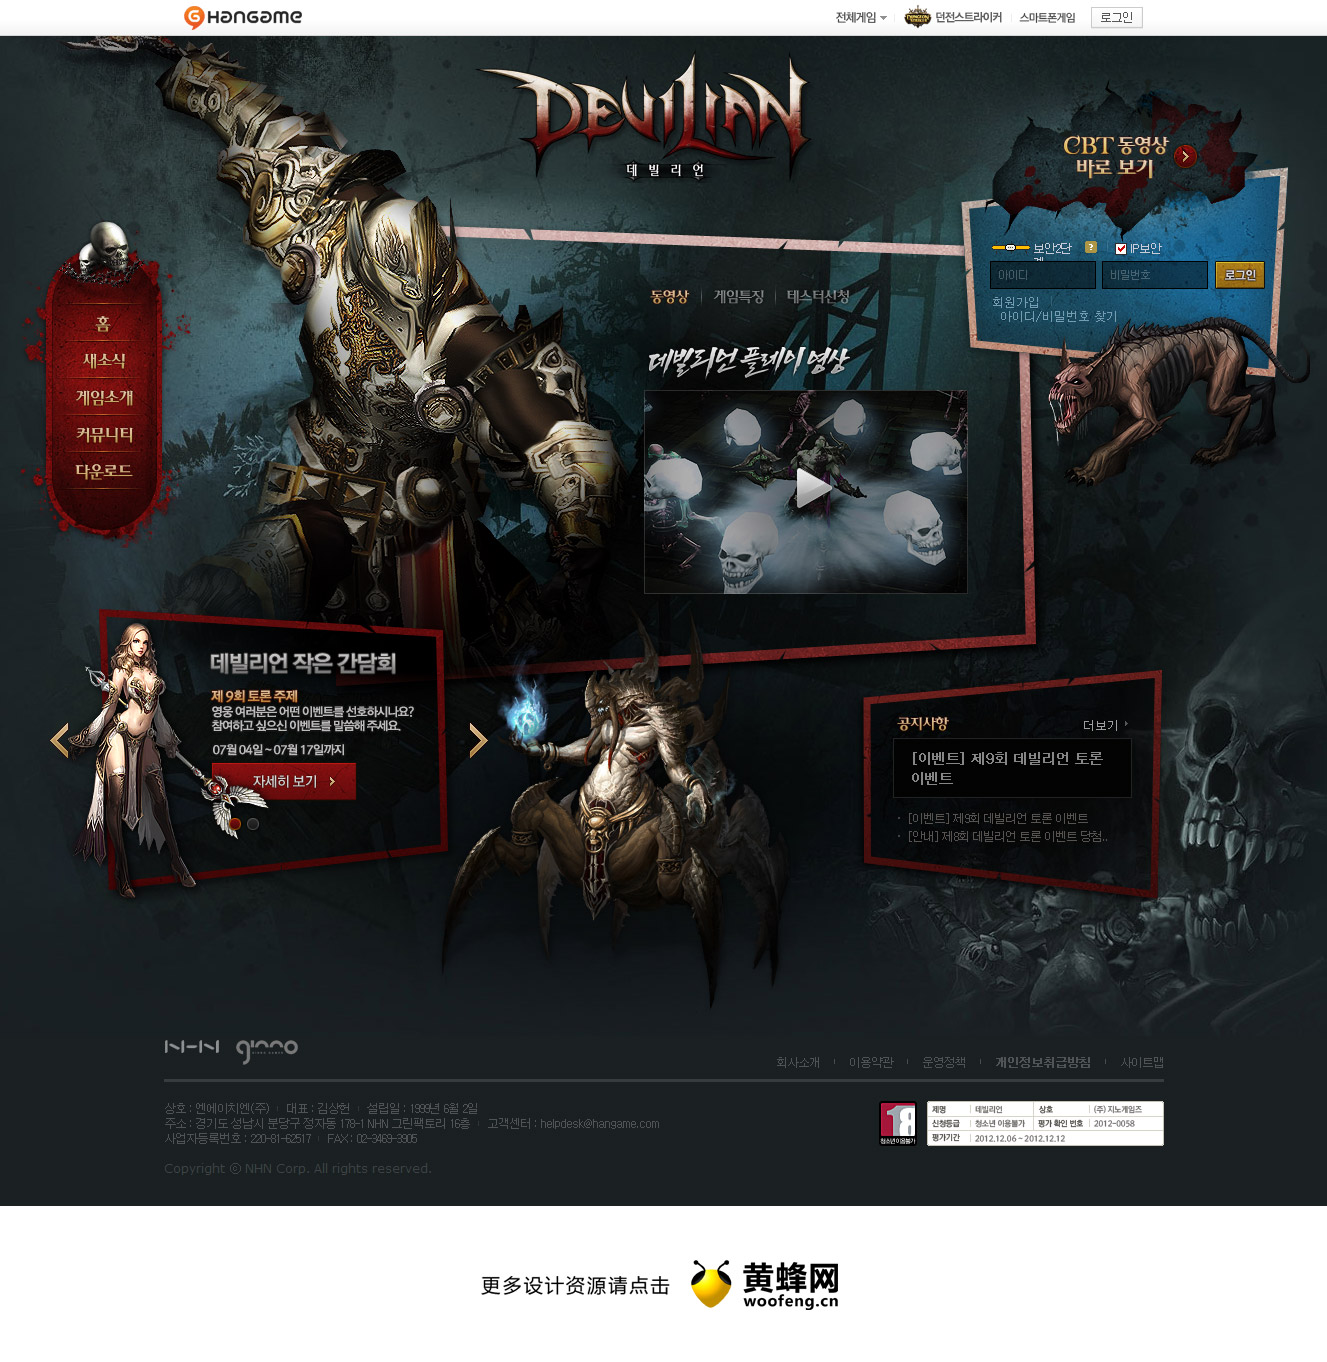 devilinn韩国游戏网站，来源自黄蜂网https://woofeng.cn/